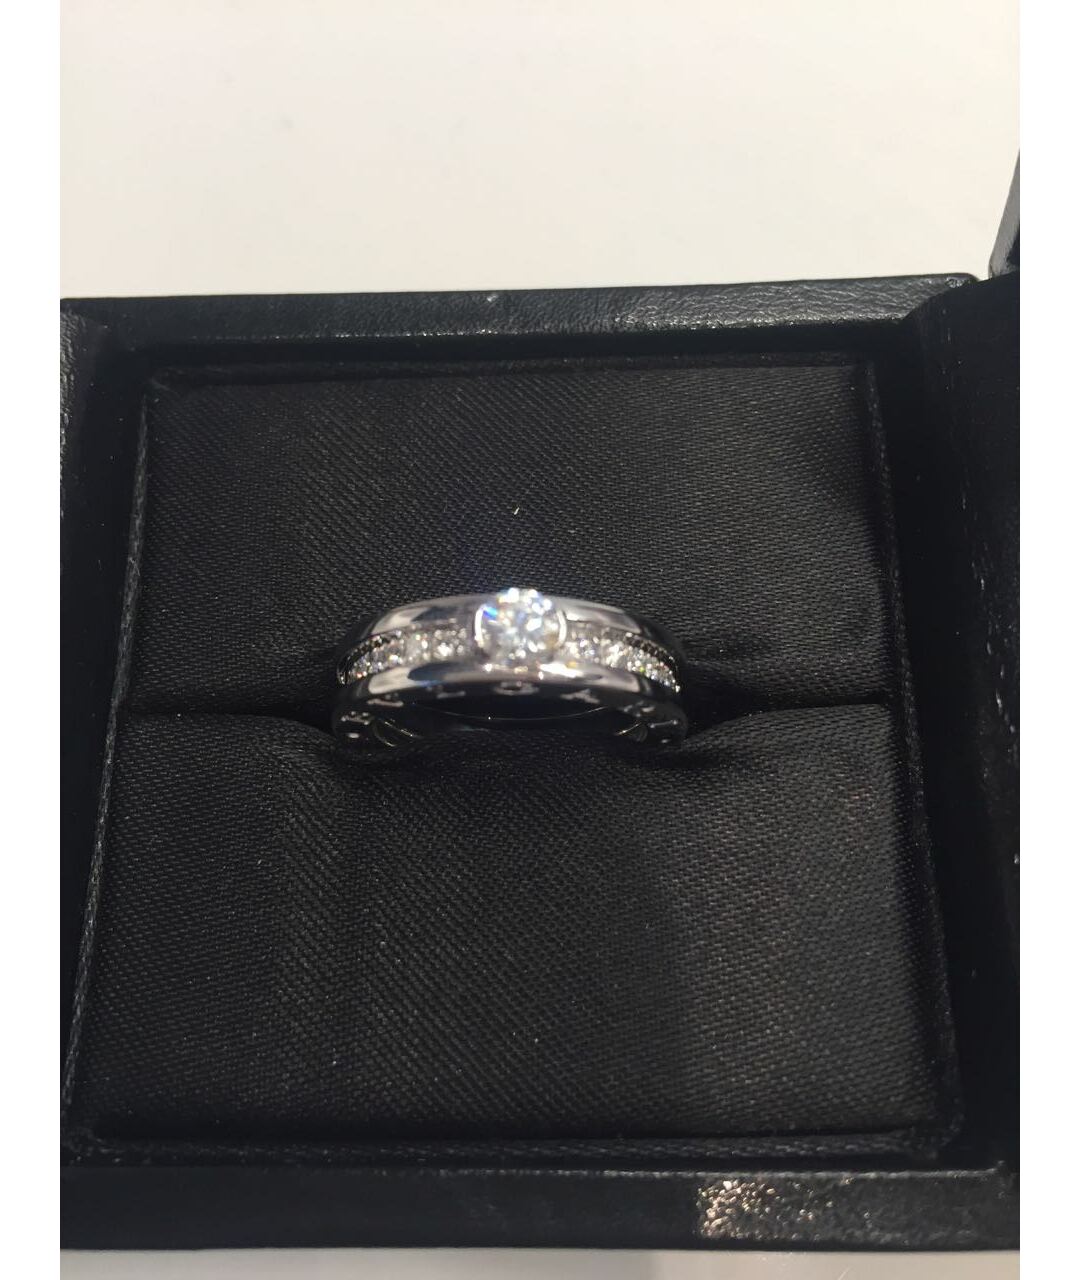 BVLGARI Серебряное кольцо из белого золота, фото 9